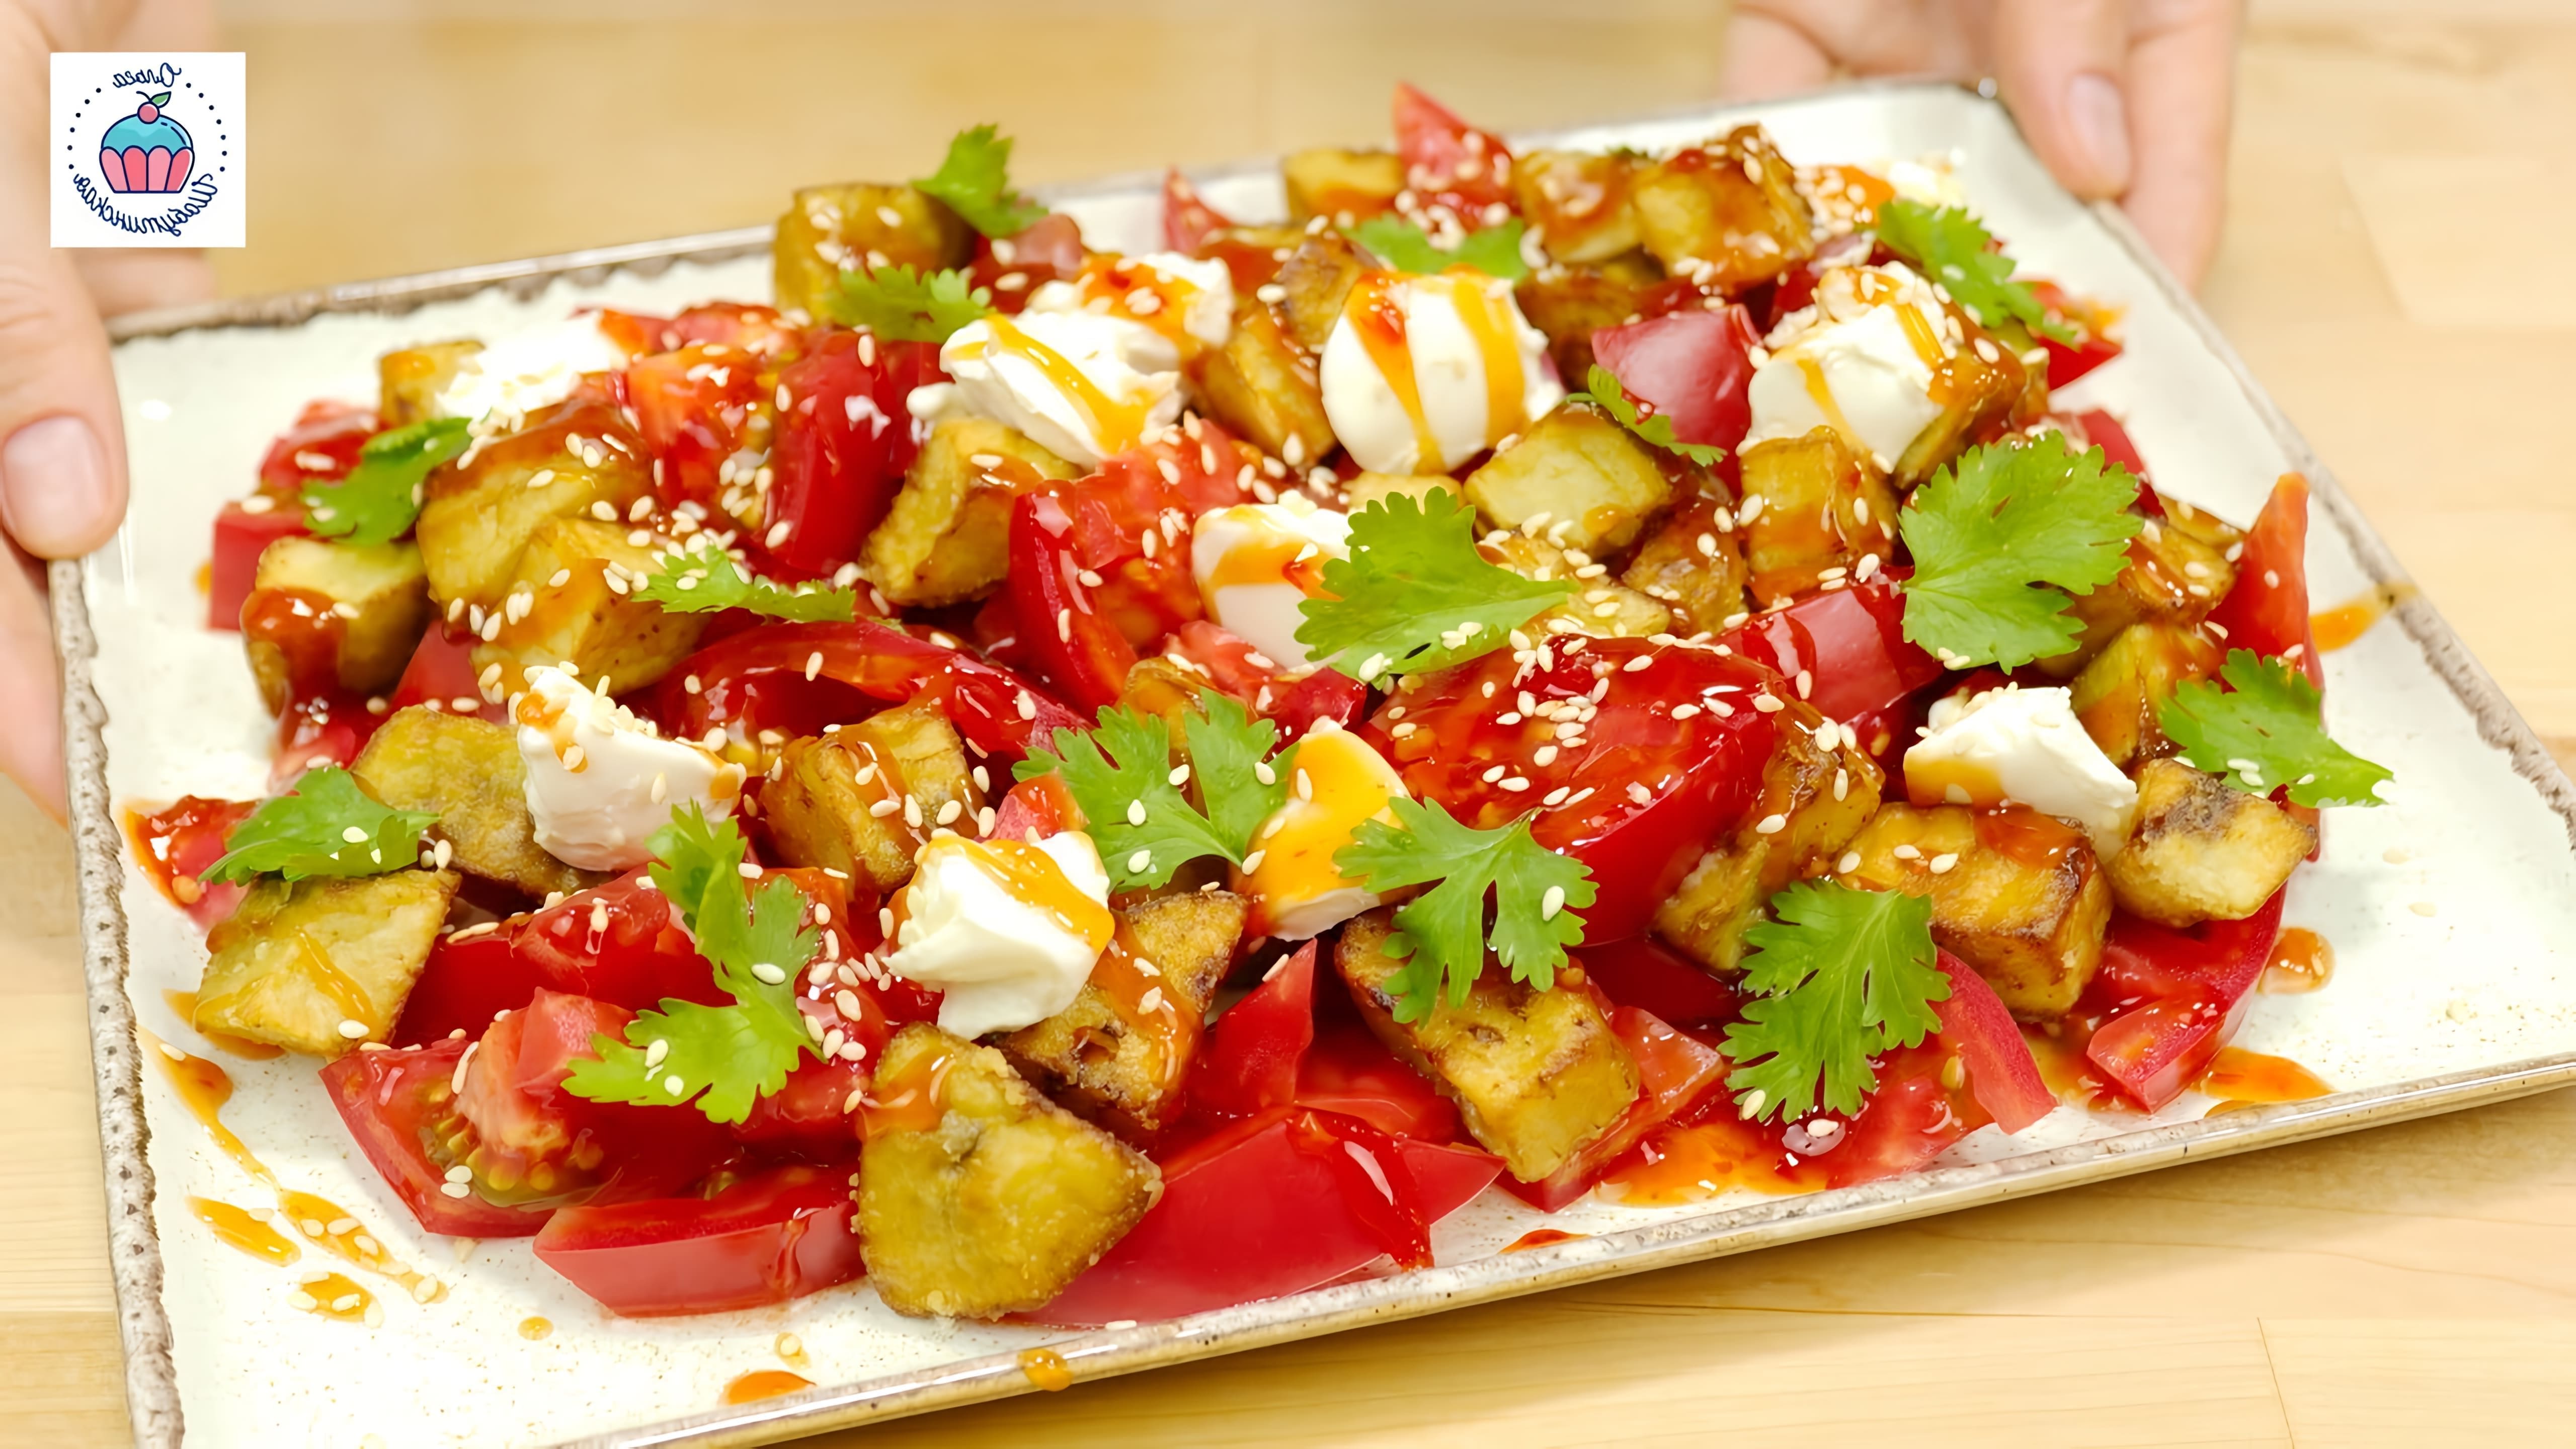 В этом видео демонстрируется рецепт приготовления салата из баклажанов, помидоров и сыра